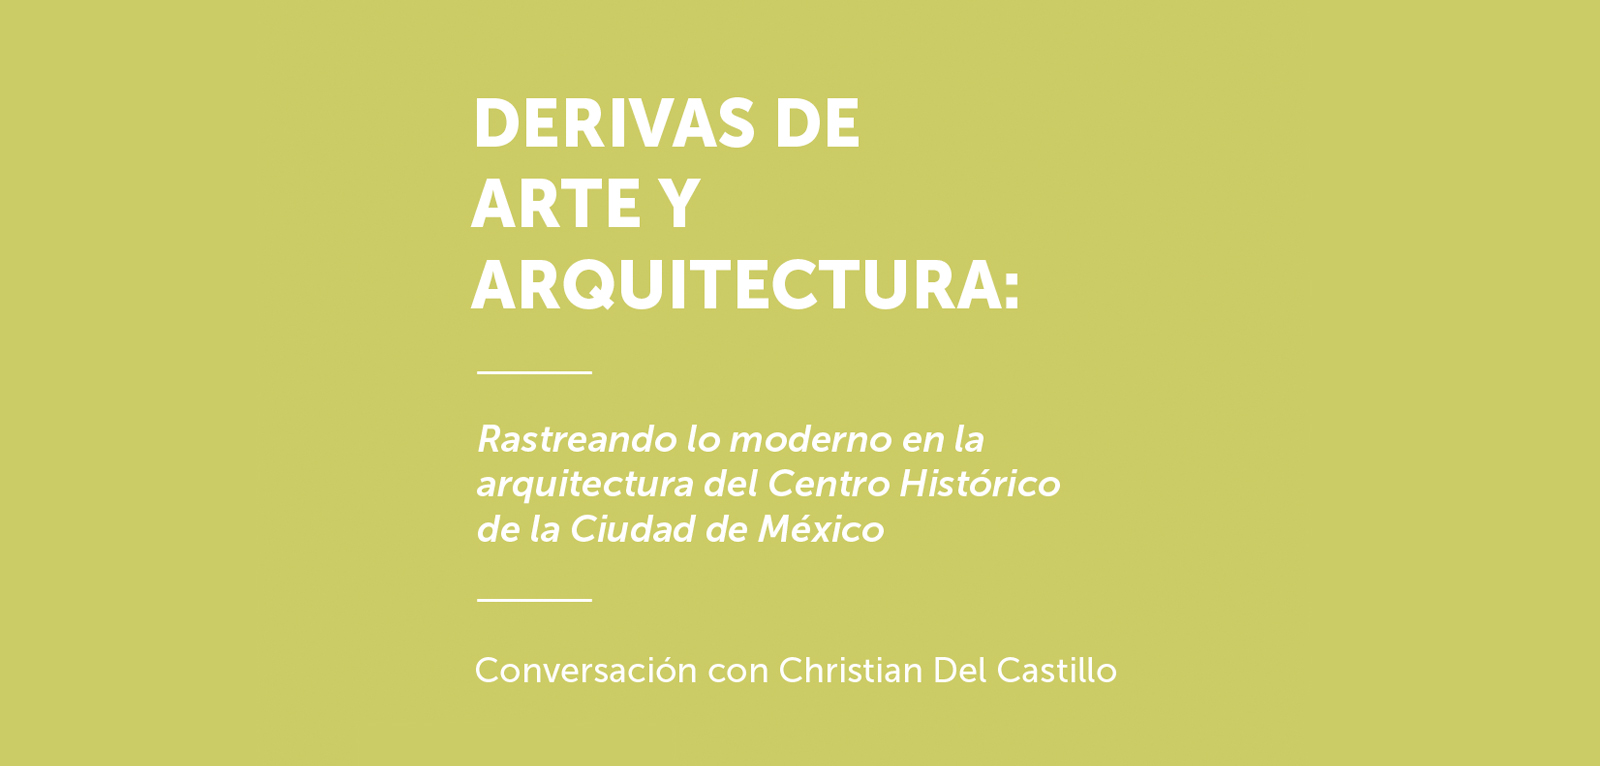 Christian del Castillo, Rastreando lo moderno en la arquitectura del Centro Histórico de la Ciudad de México, Derivas de Arte y Arquitectura de Arte Abierto.